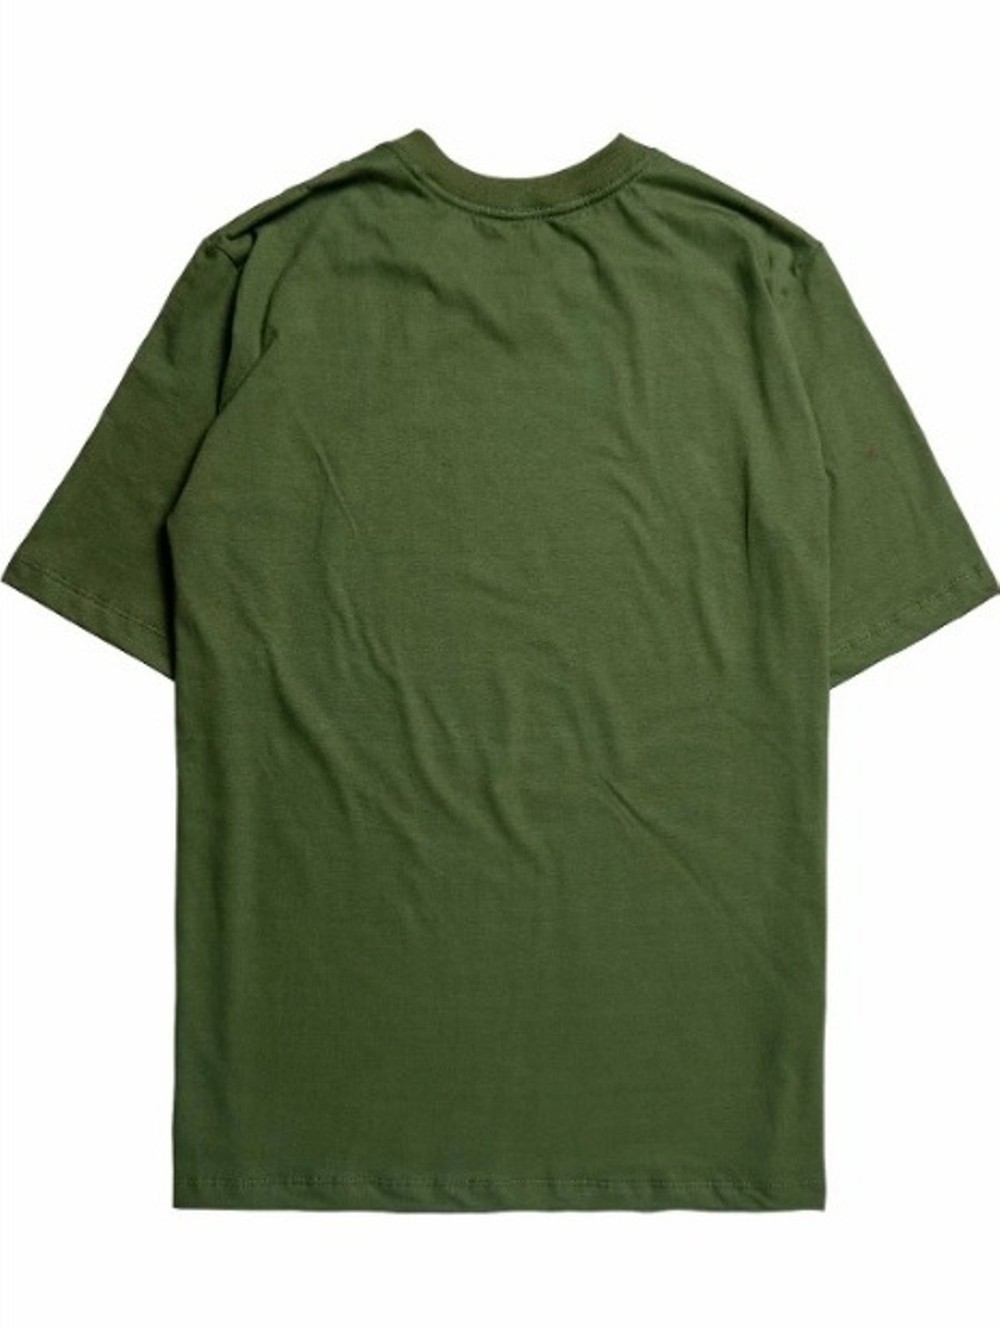 Camiseta Future Light Cone Verde